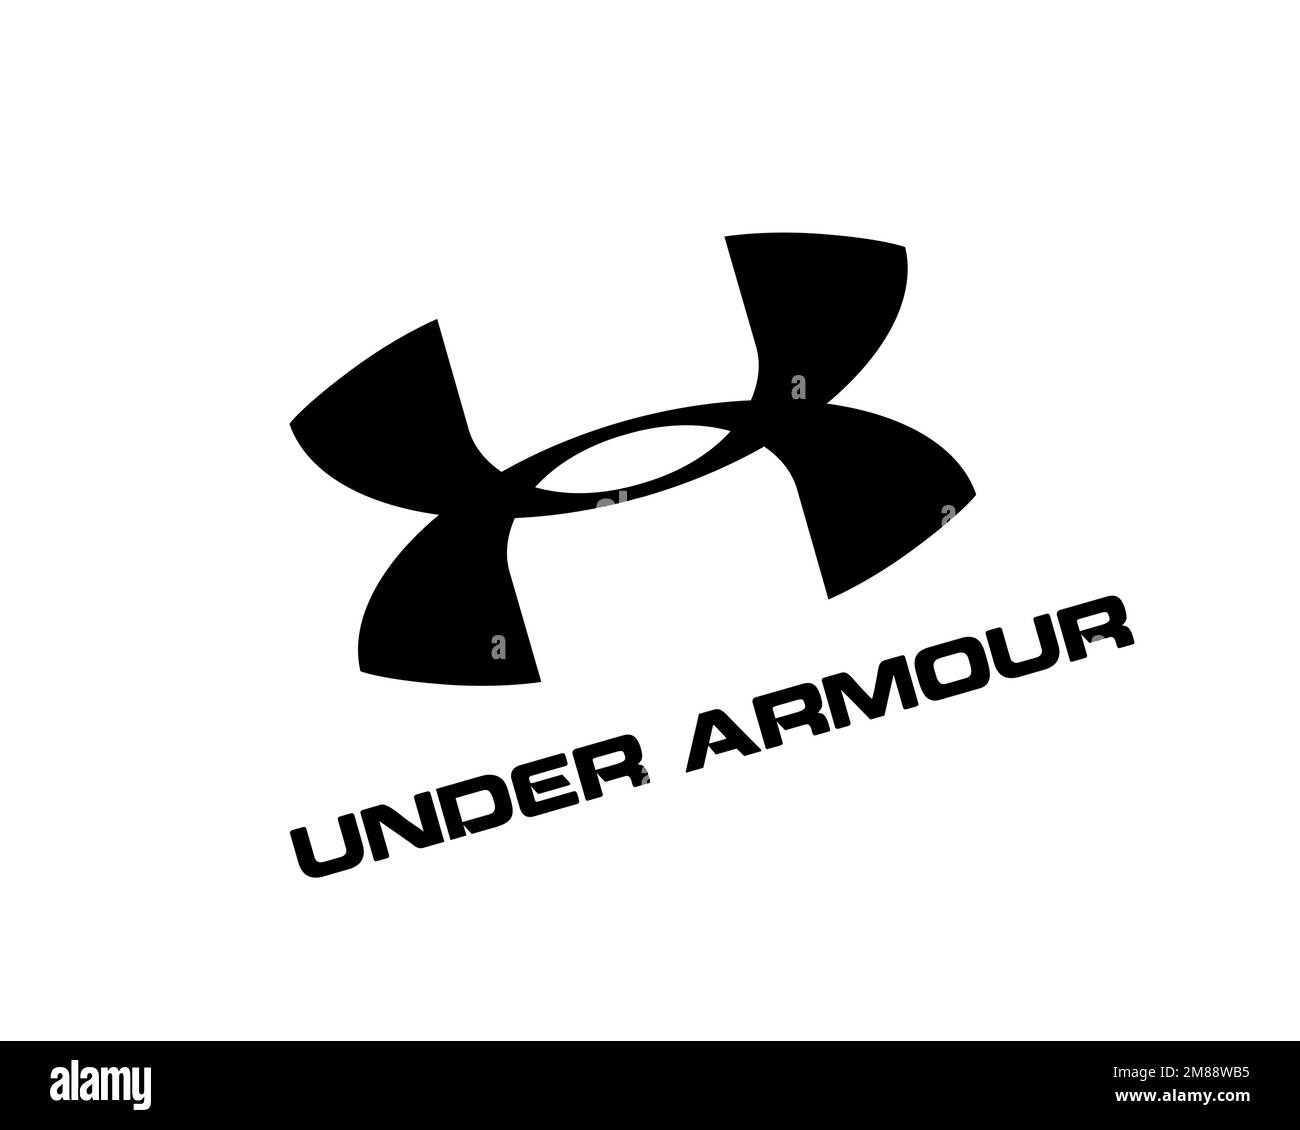 Consultar montaje Reunión Under armour logo Imágenes de stock en blanco y negro - Alamy